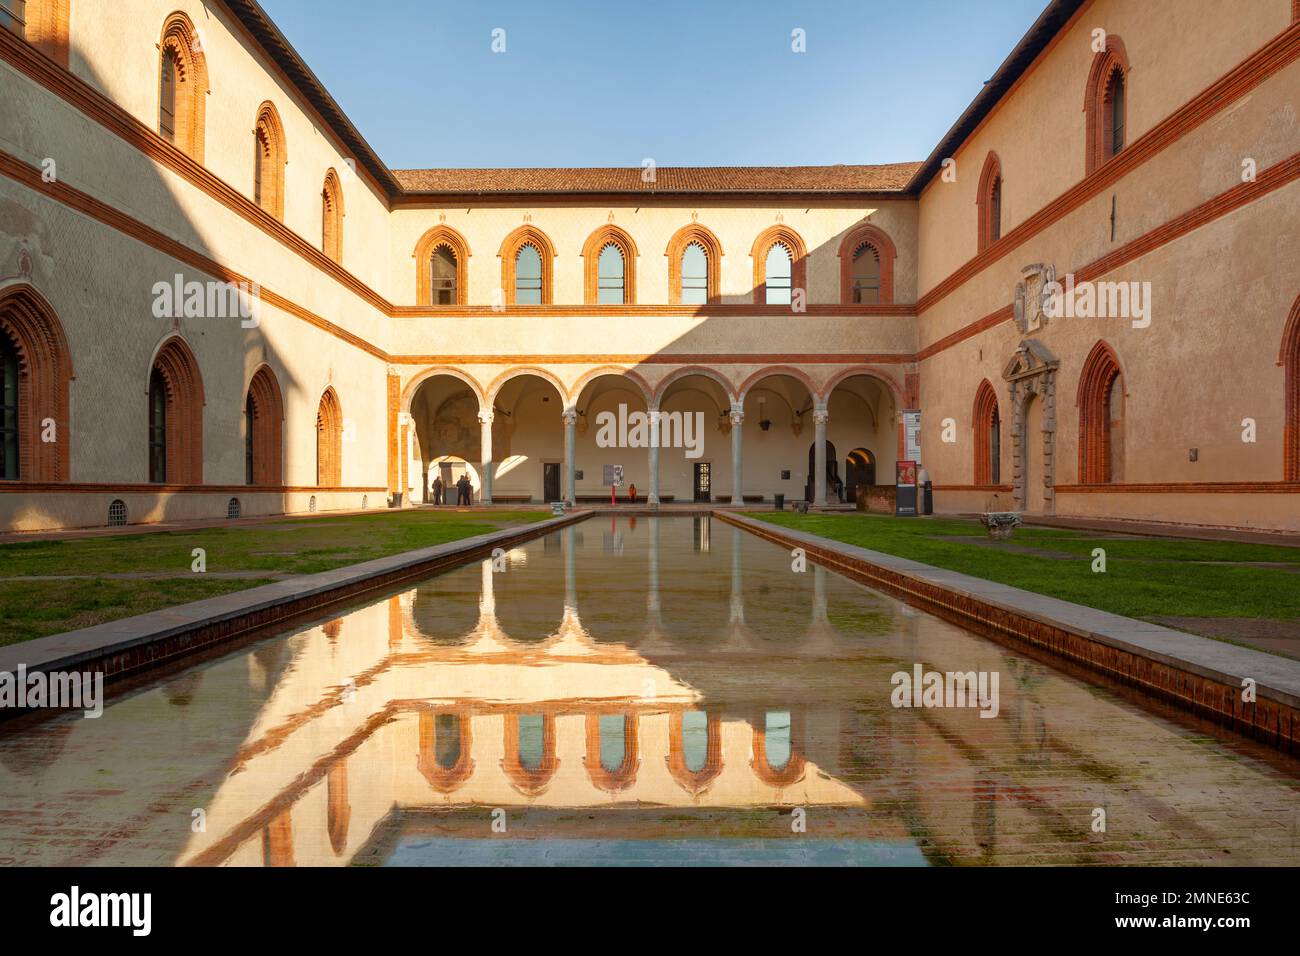 Innenhof der Burg Sforza (Castello Sforzesco) in Mailand, Italien, eine der größten Zitadellen in Europa. Stockfoto